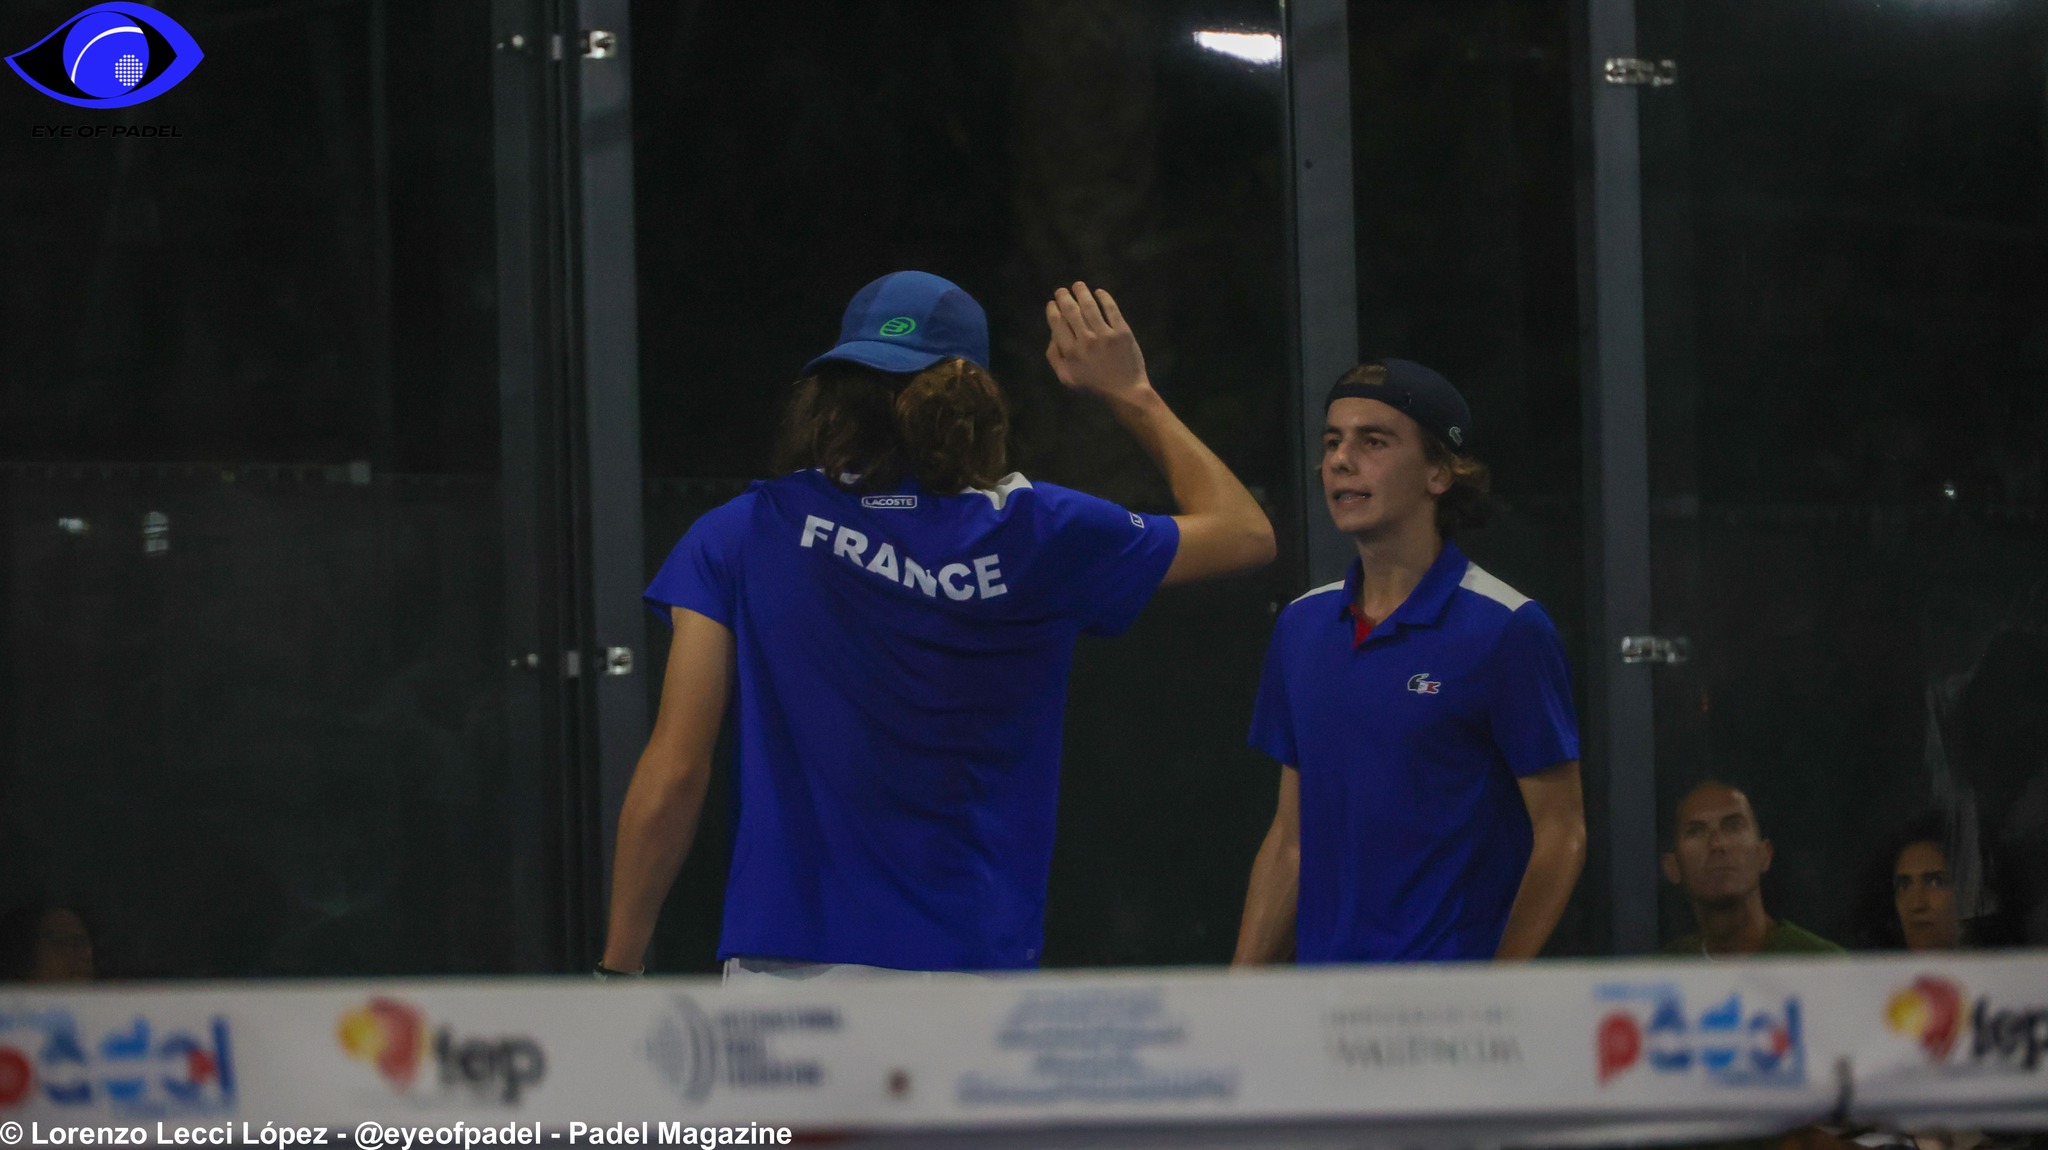 LIVE europæiske juniormesterskaber: Frankrig vs Holland (M)